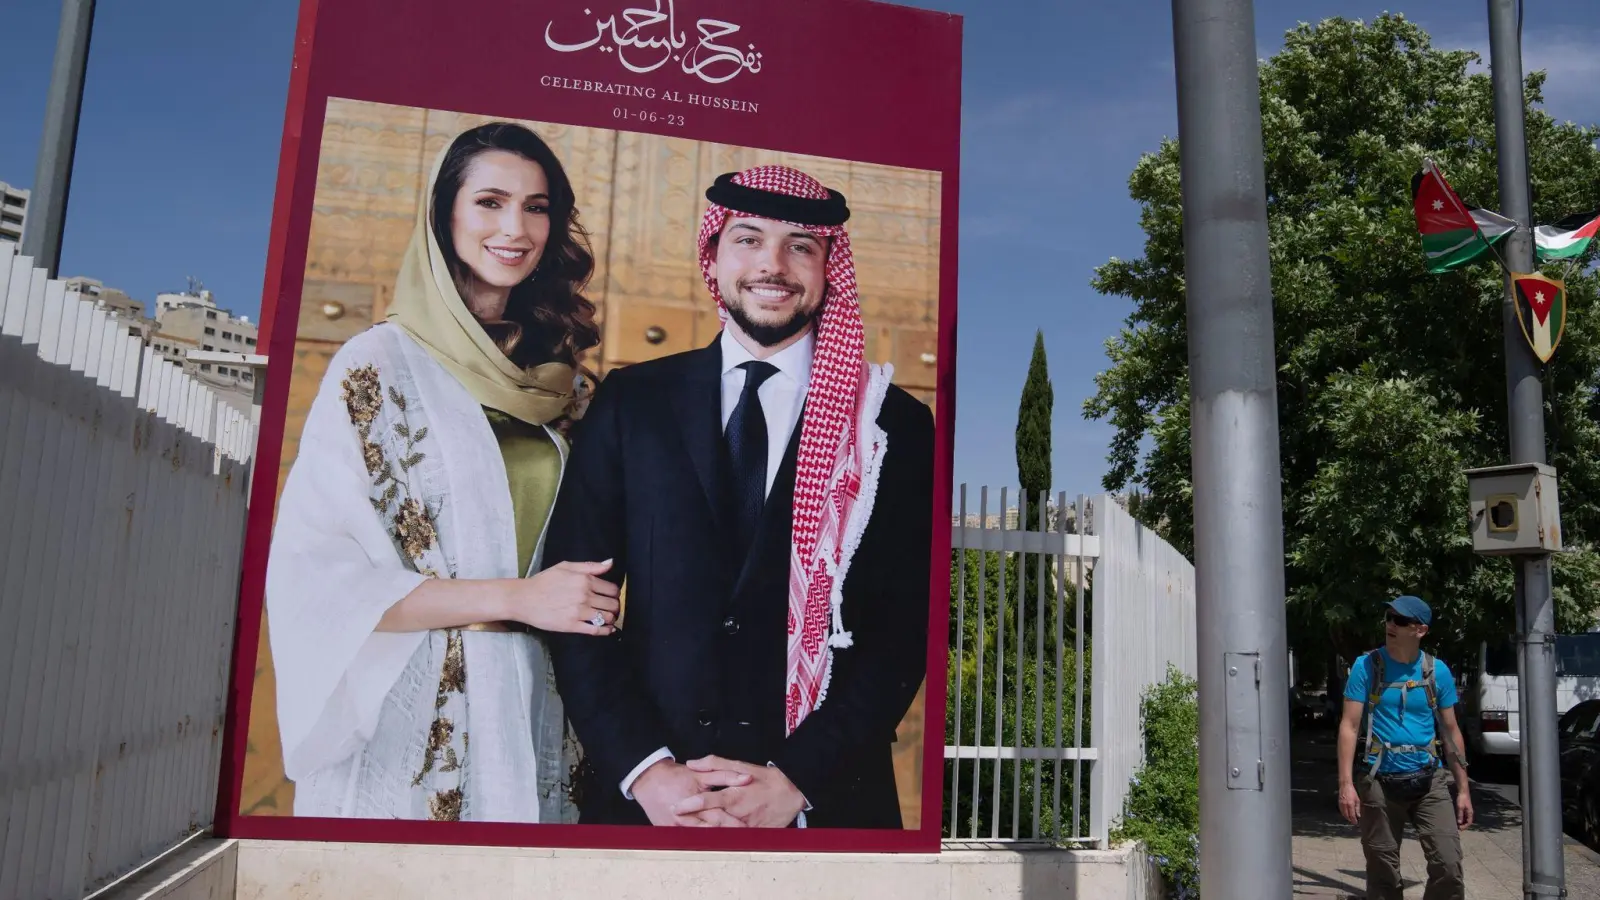 Prinz Hussein bin Abdullah II. hatte seine Verlobung mit Radschwa Al Saif im August bekanntgegeben. (Foto: Nasser Nasser/AP)